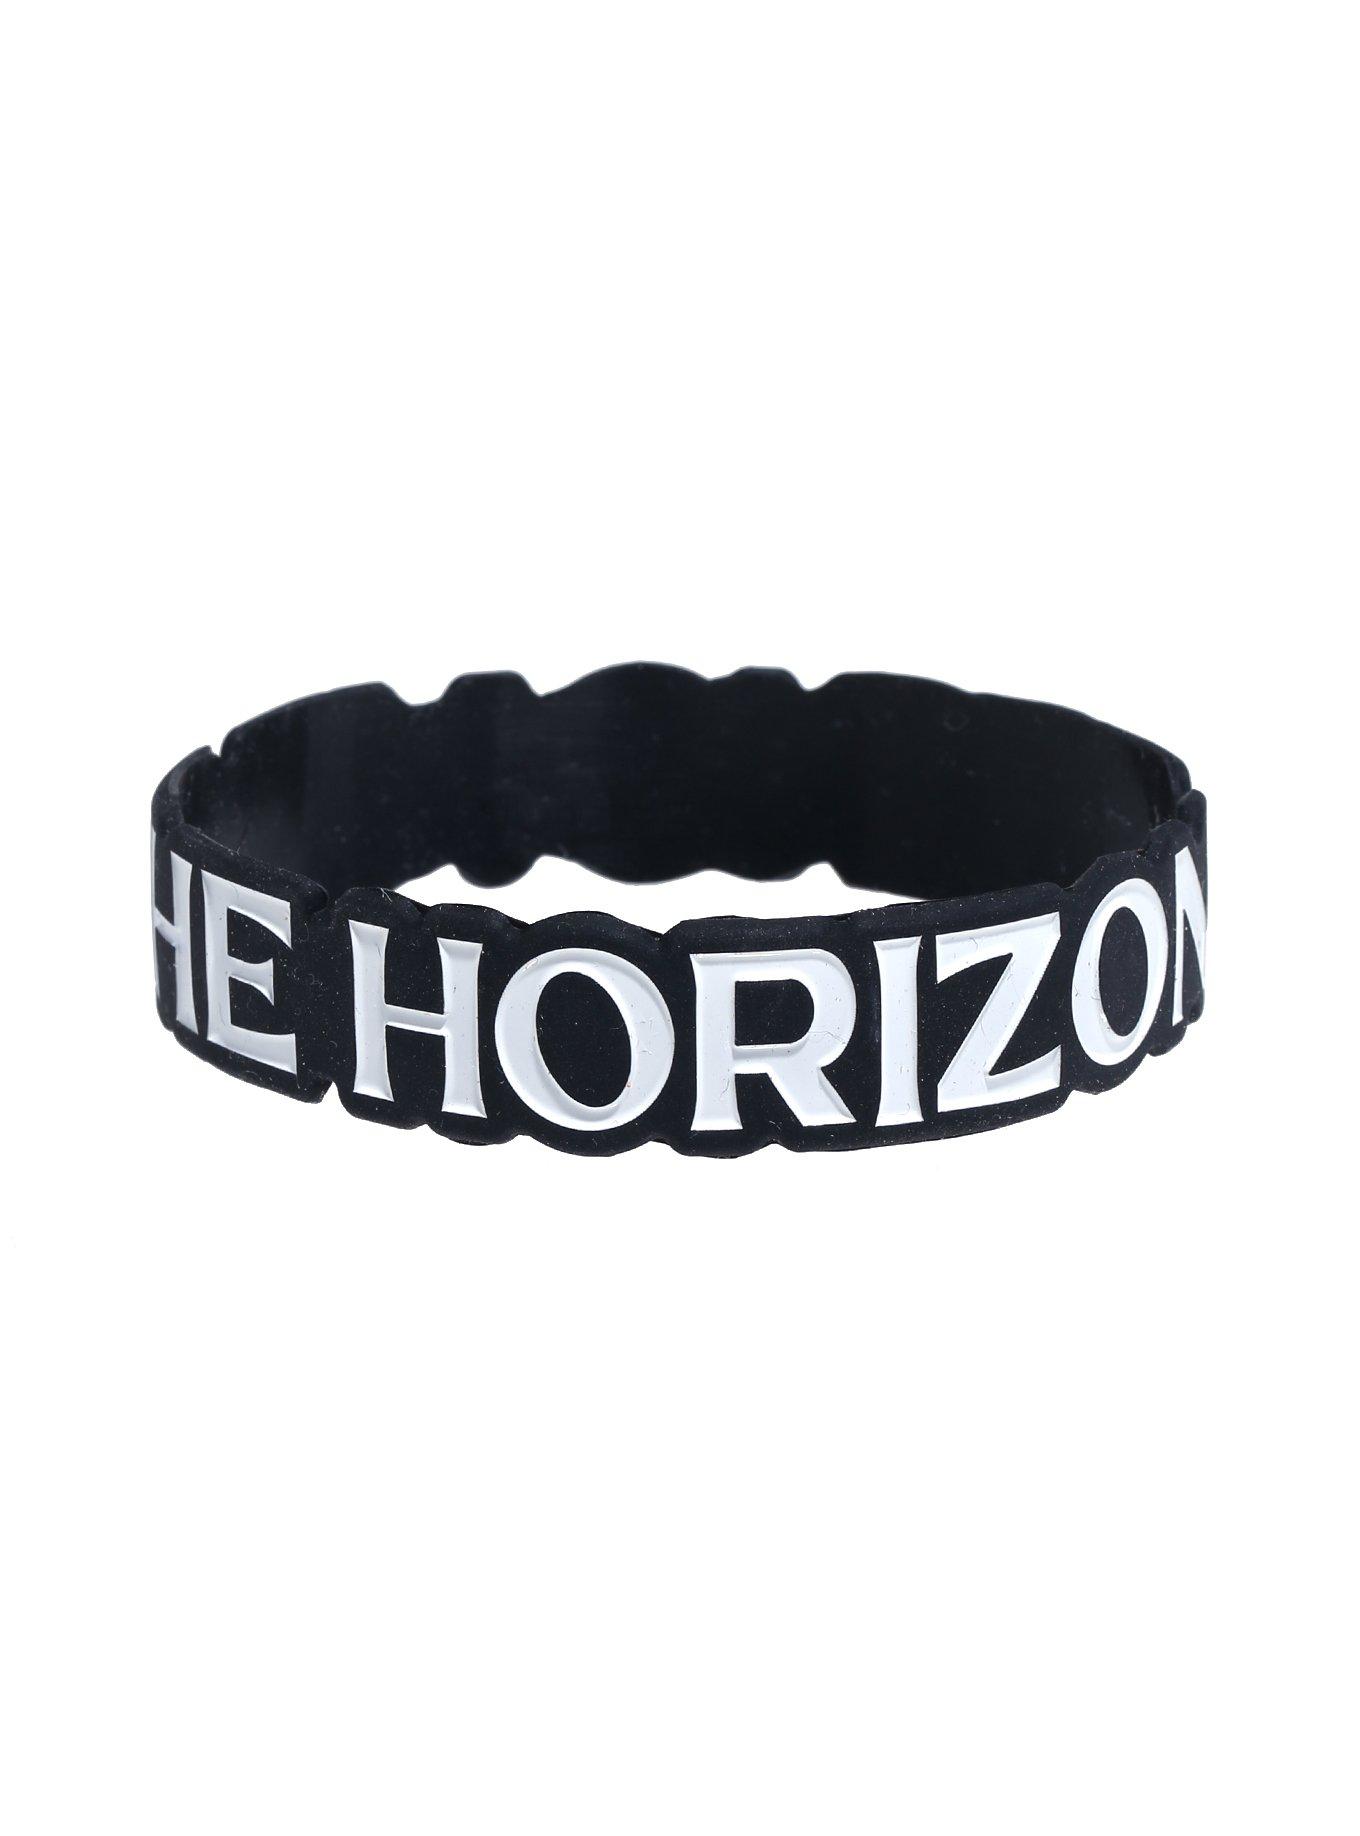 Bring Me The Horizon Logo Rubber Bracelet, , alternate